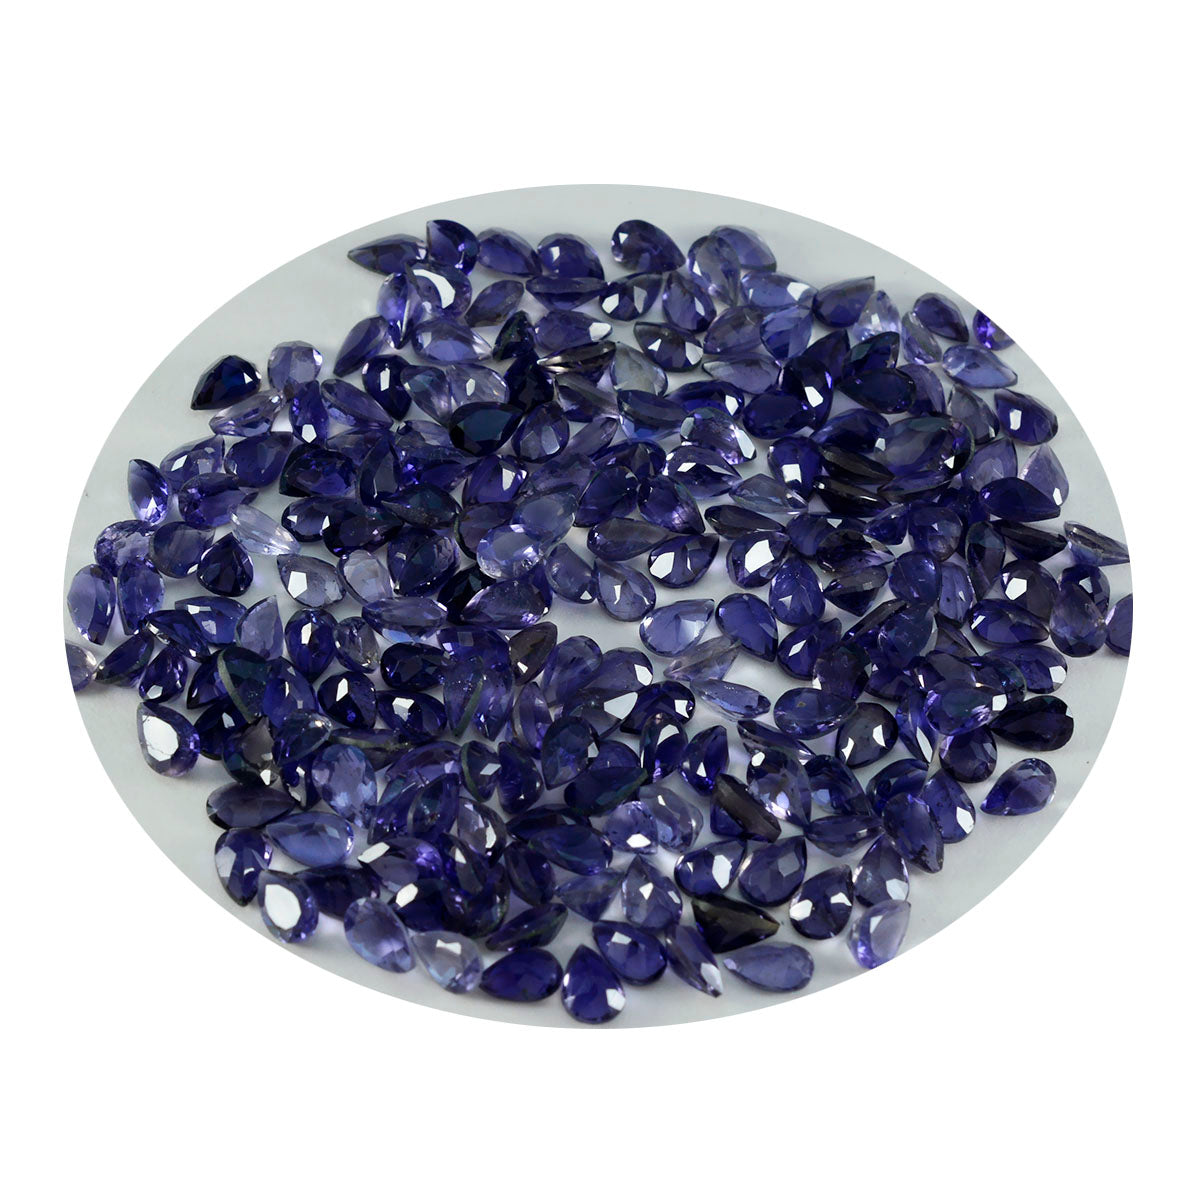 Riyogems 1 Stück blauer Iolith, facettiert, 3 x 5 mm, Birnenform, hochwertige Edelsteine